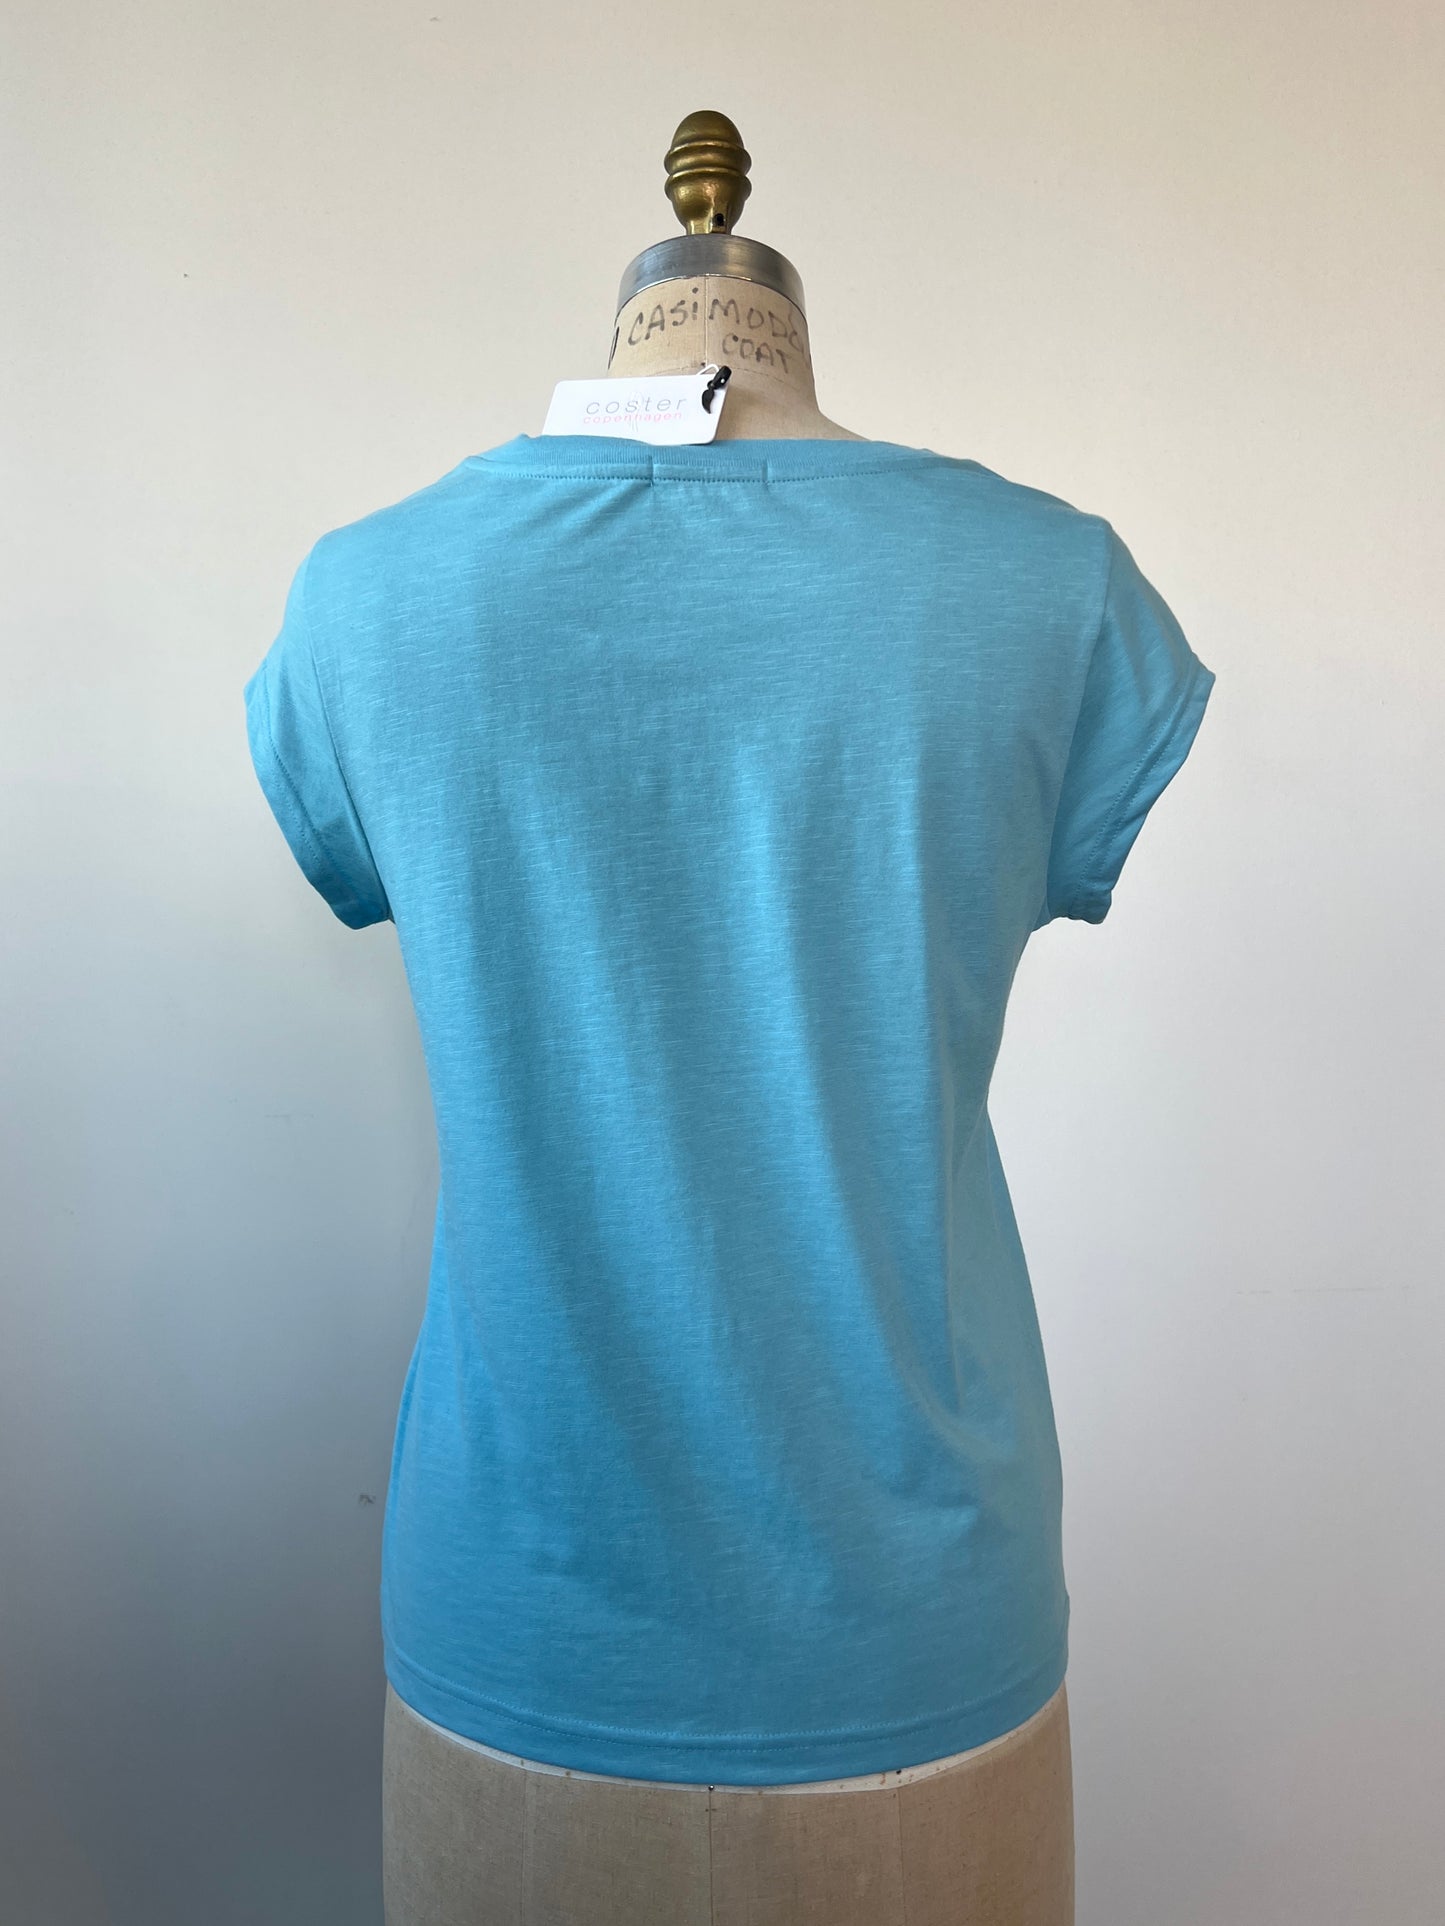 T-shirt bleu à imprimé Coster turquoise métallisé (S)